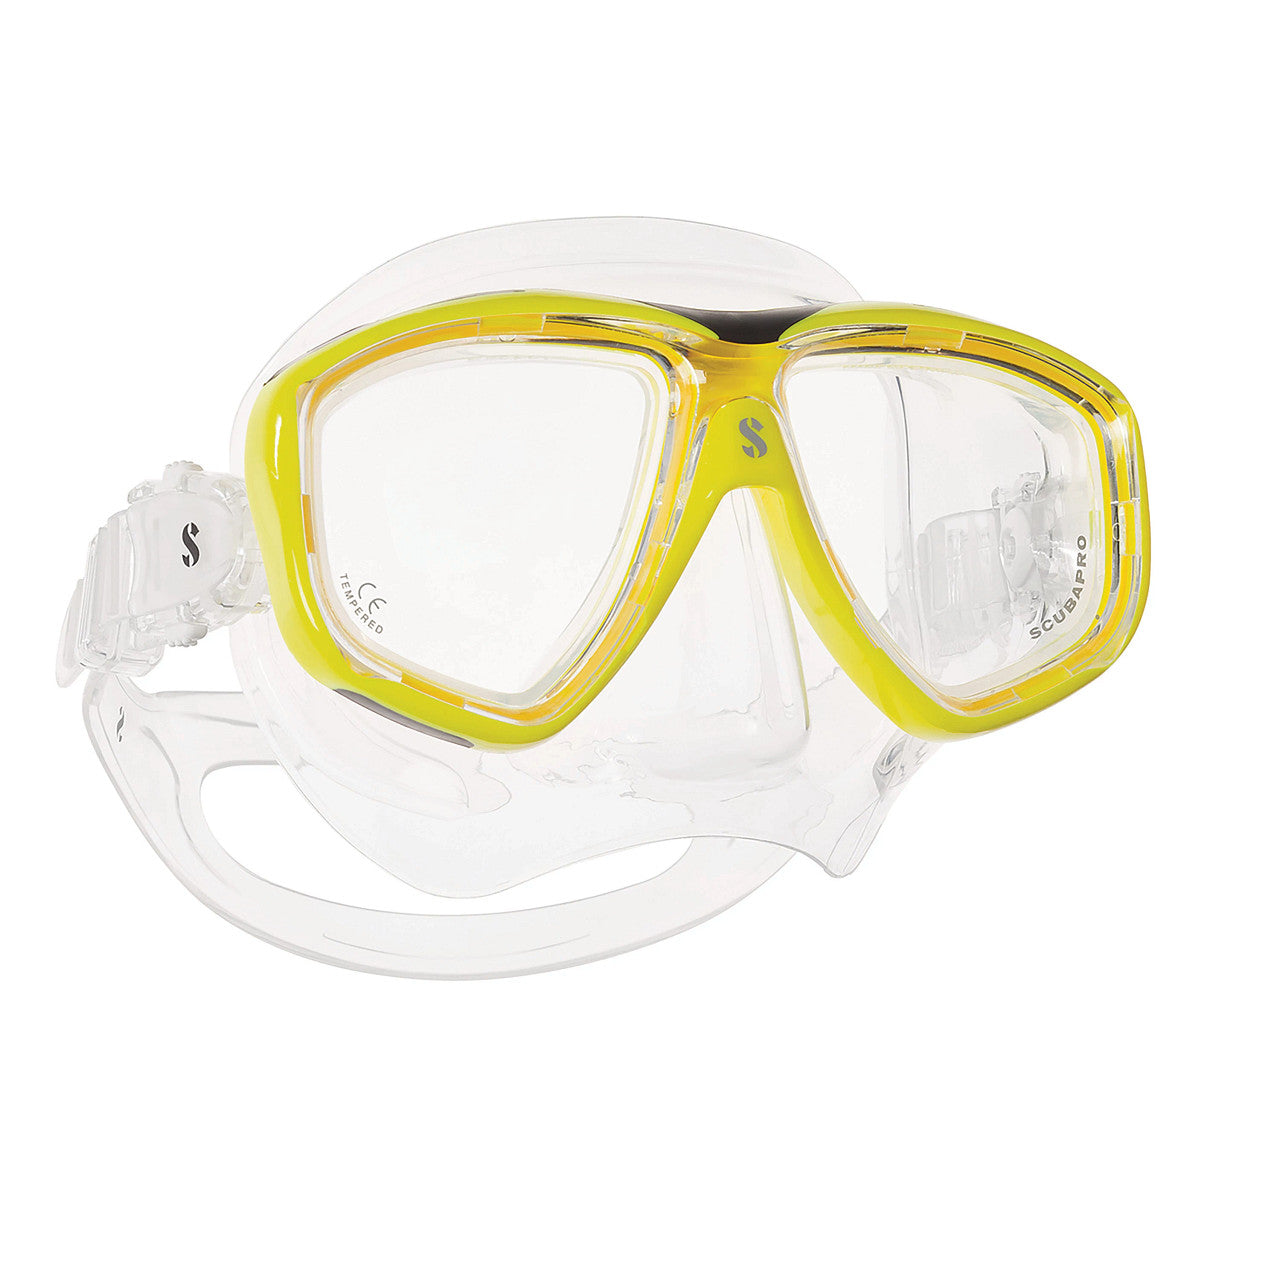 Scubapro Flux Tiwn Dive Mask